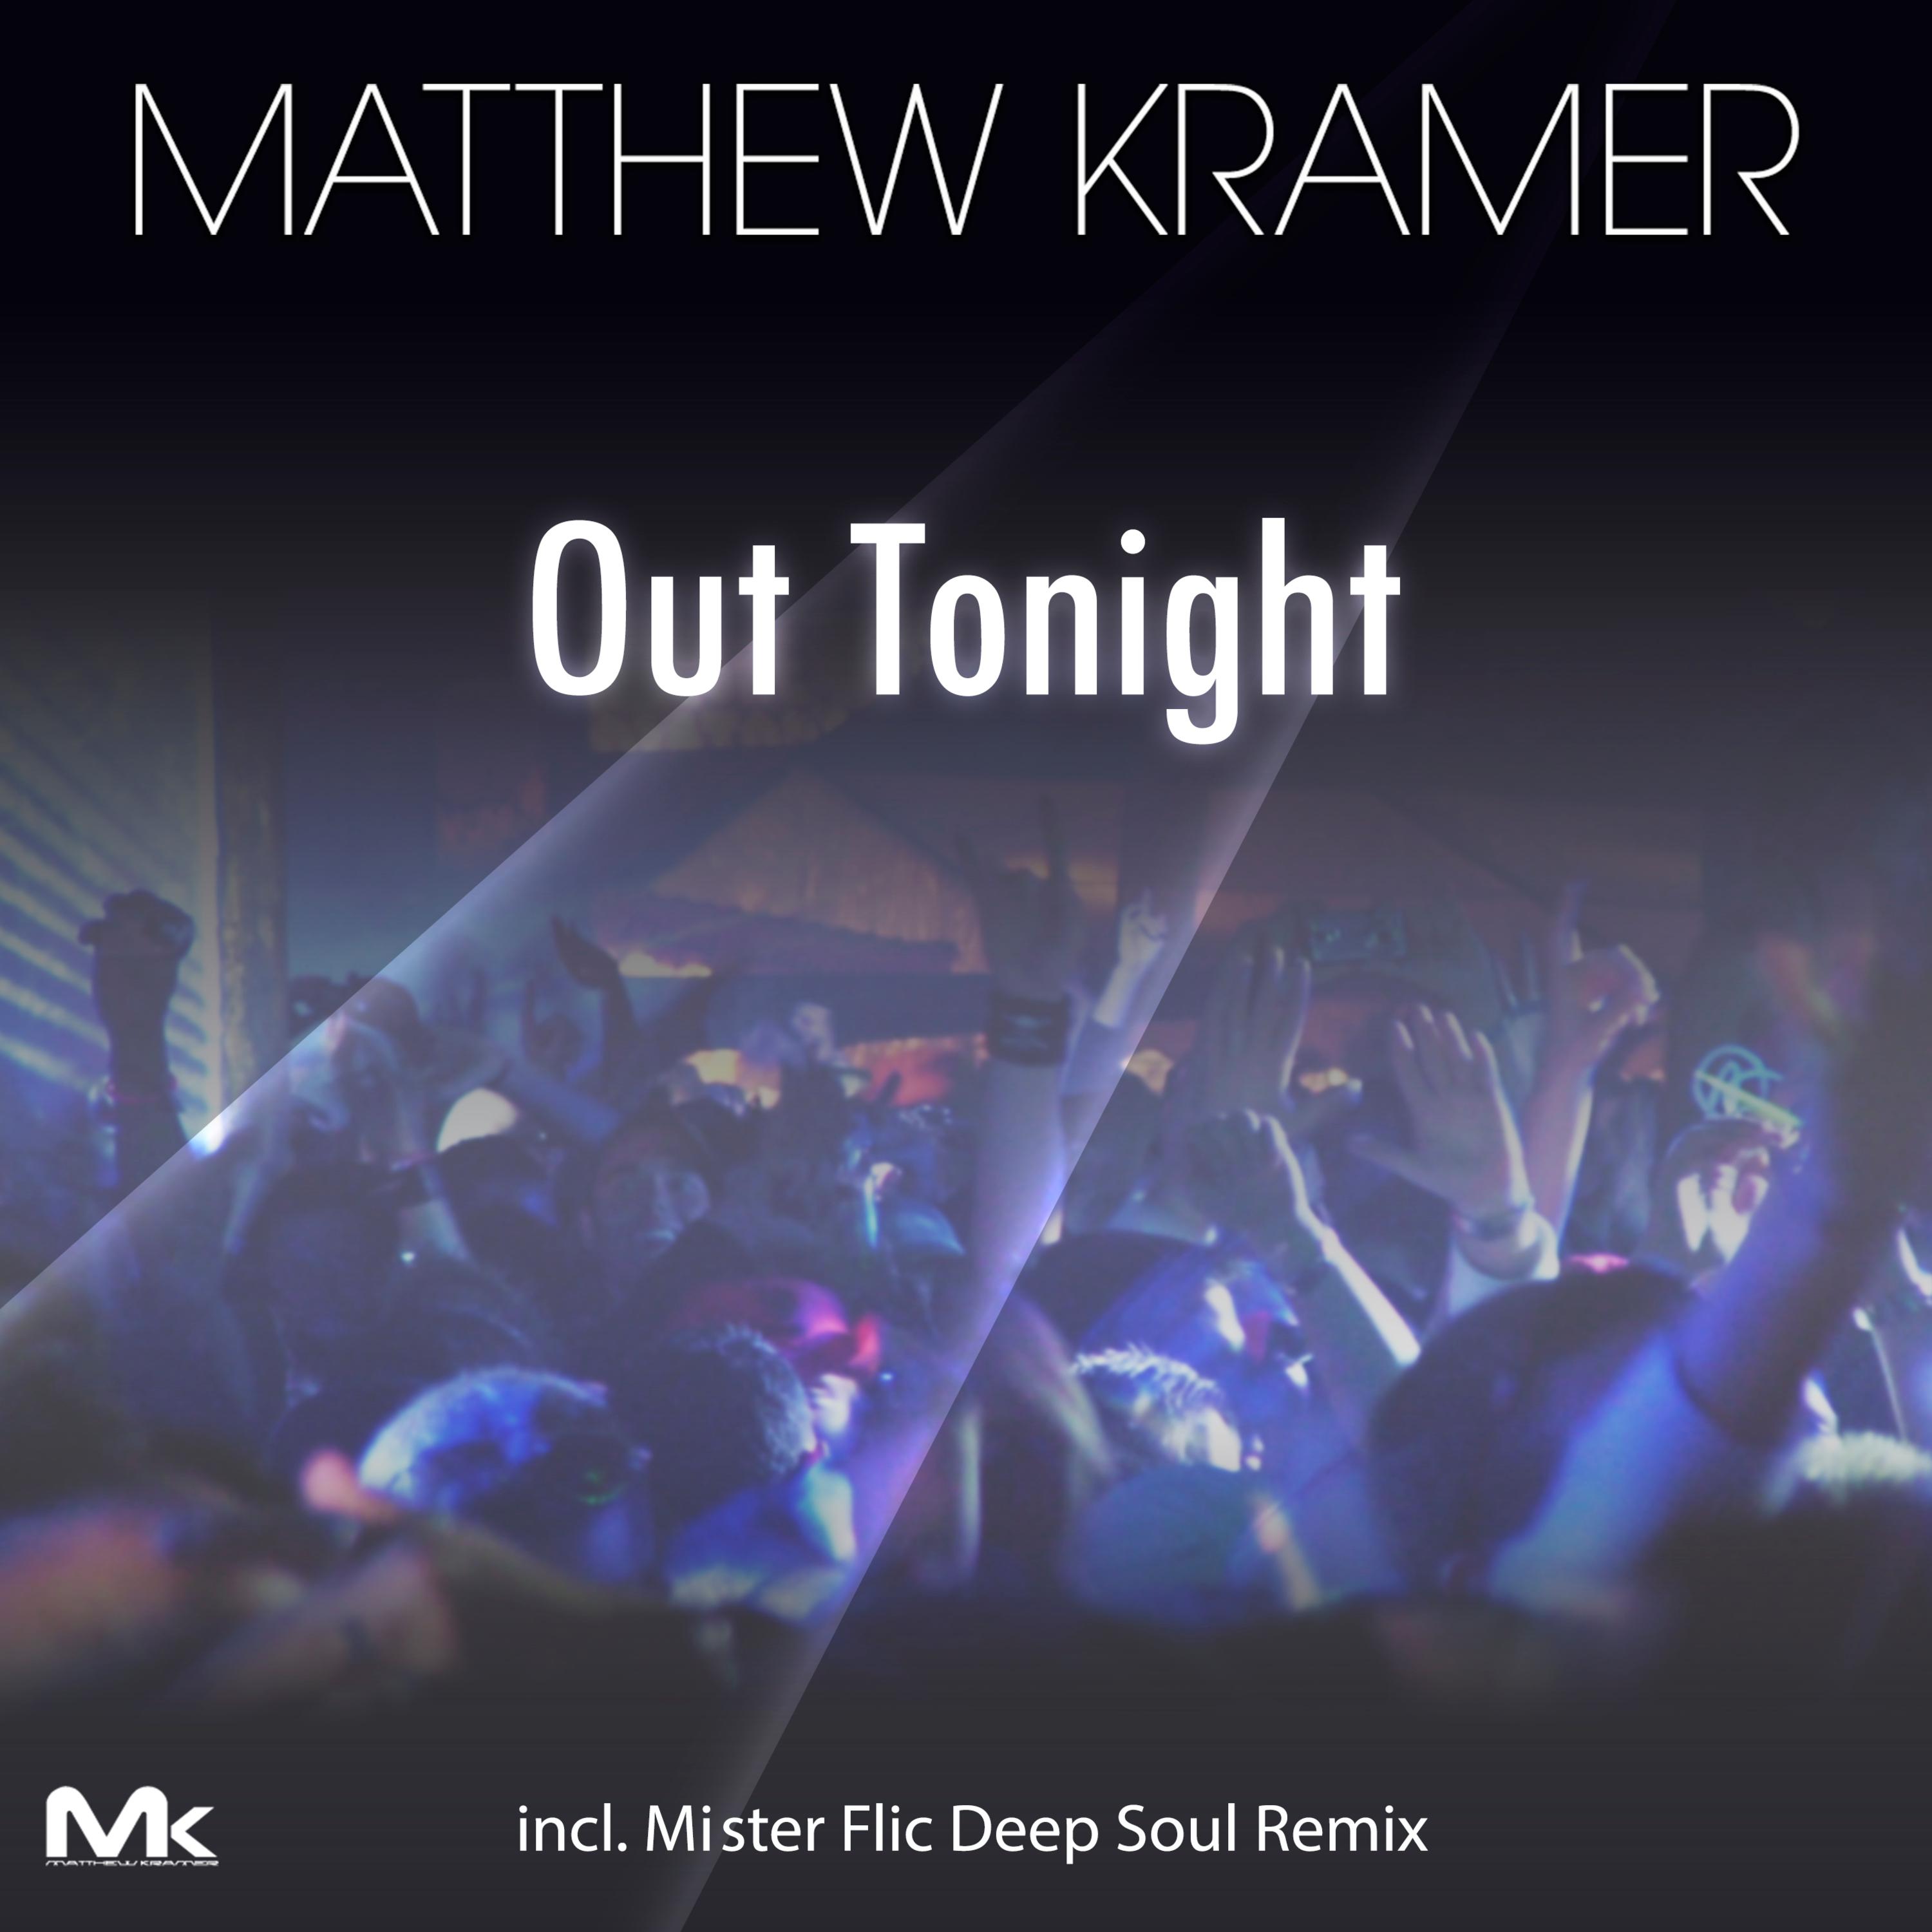 Matthew Kramer - Out Tonight (Mister Flic DeepSoul Remix)